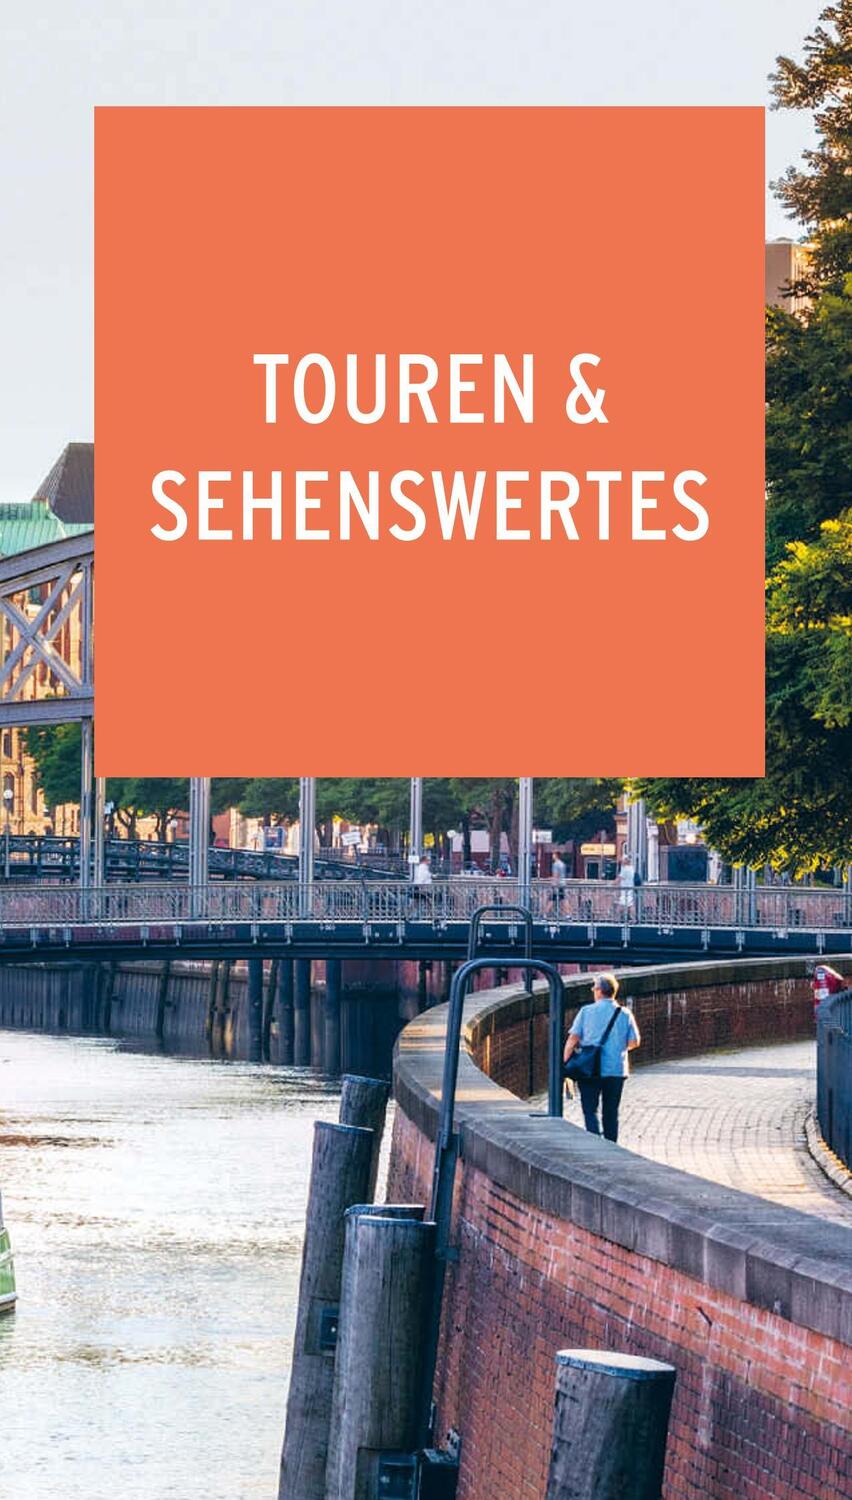 Bild: 9783846403976 | POLYGLOTT on tour Reiseführer Hamburg | Elke Frey | Taschenbuch | 2019